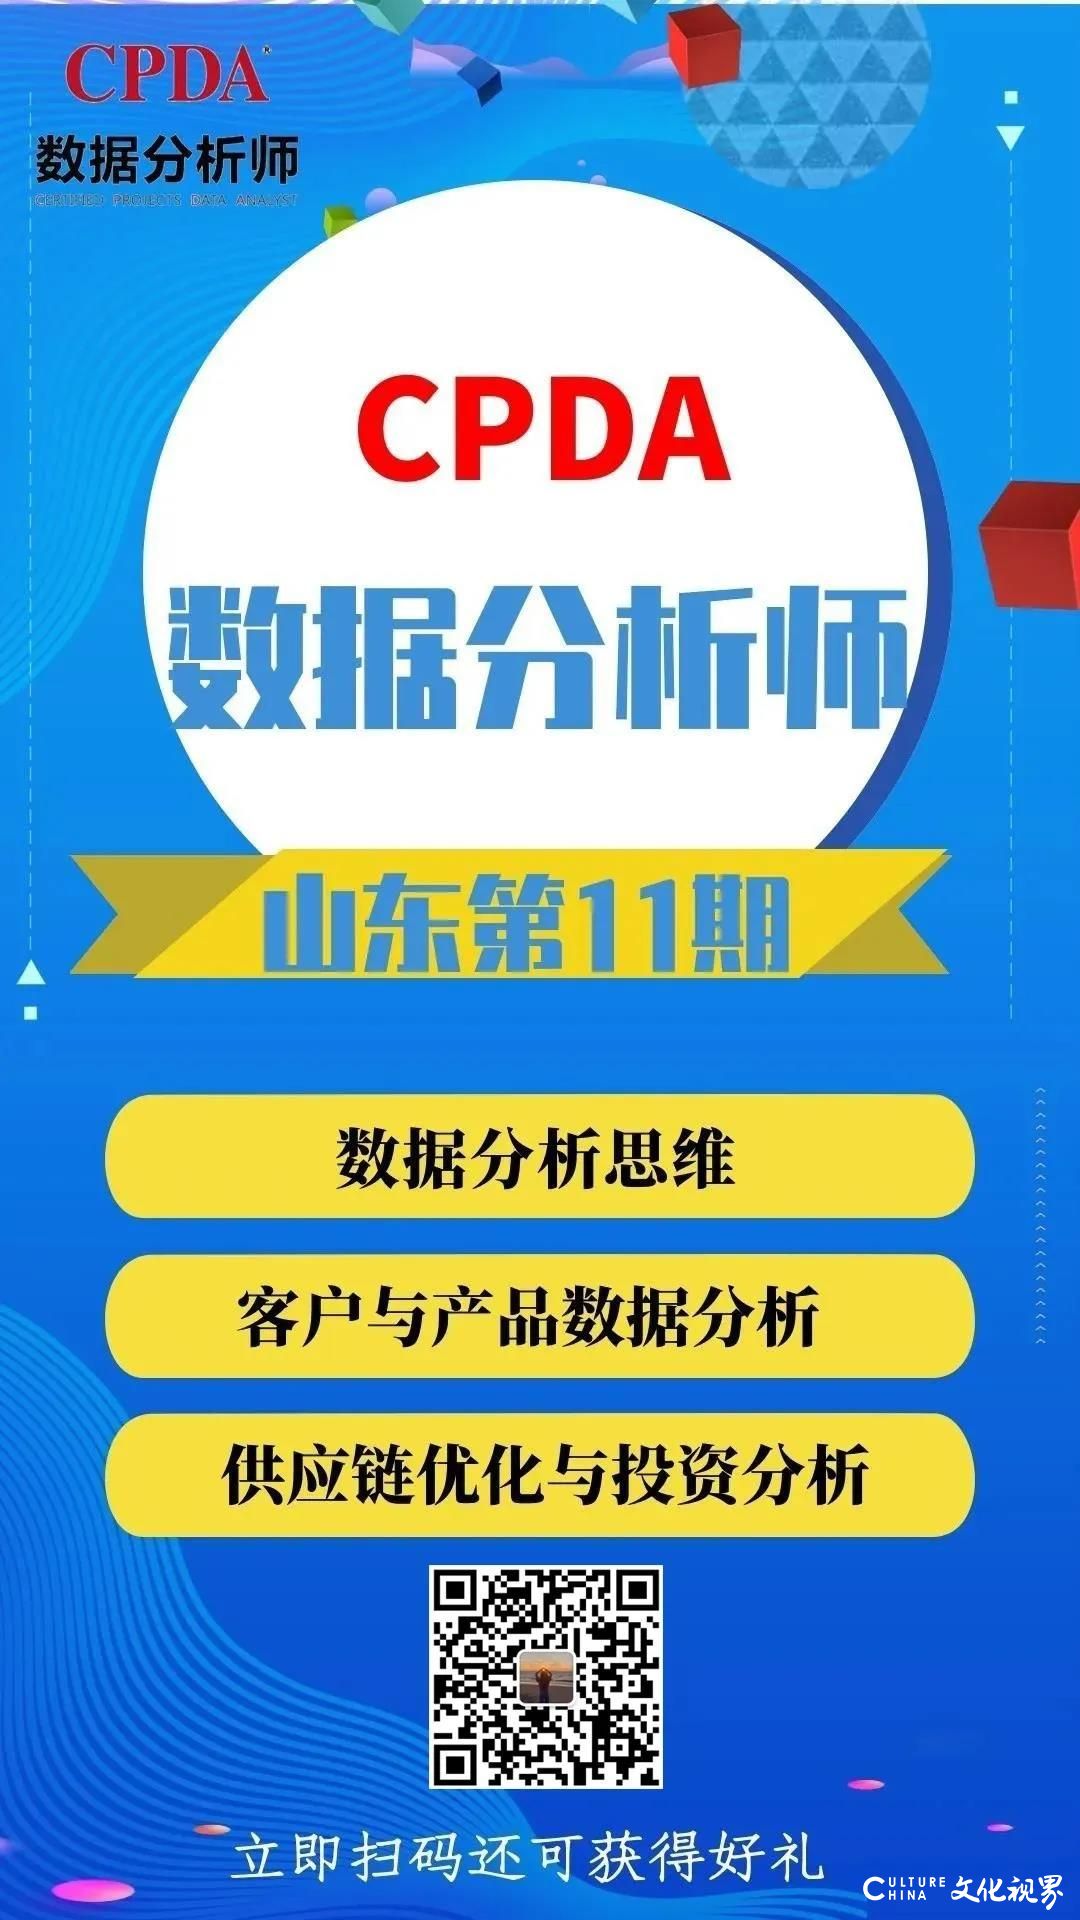 山东地区数据分析讲师选拔结果揭晓，冠军陈凯将成为CPDA山东管理中心特聘讲师